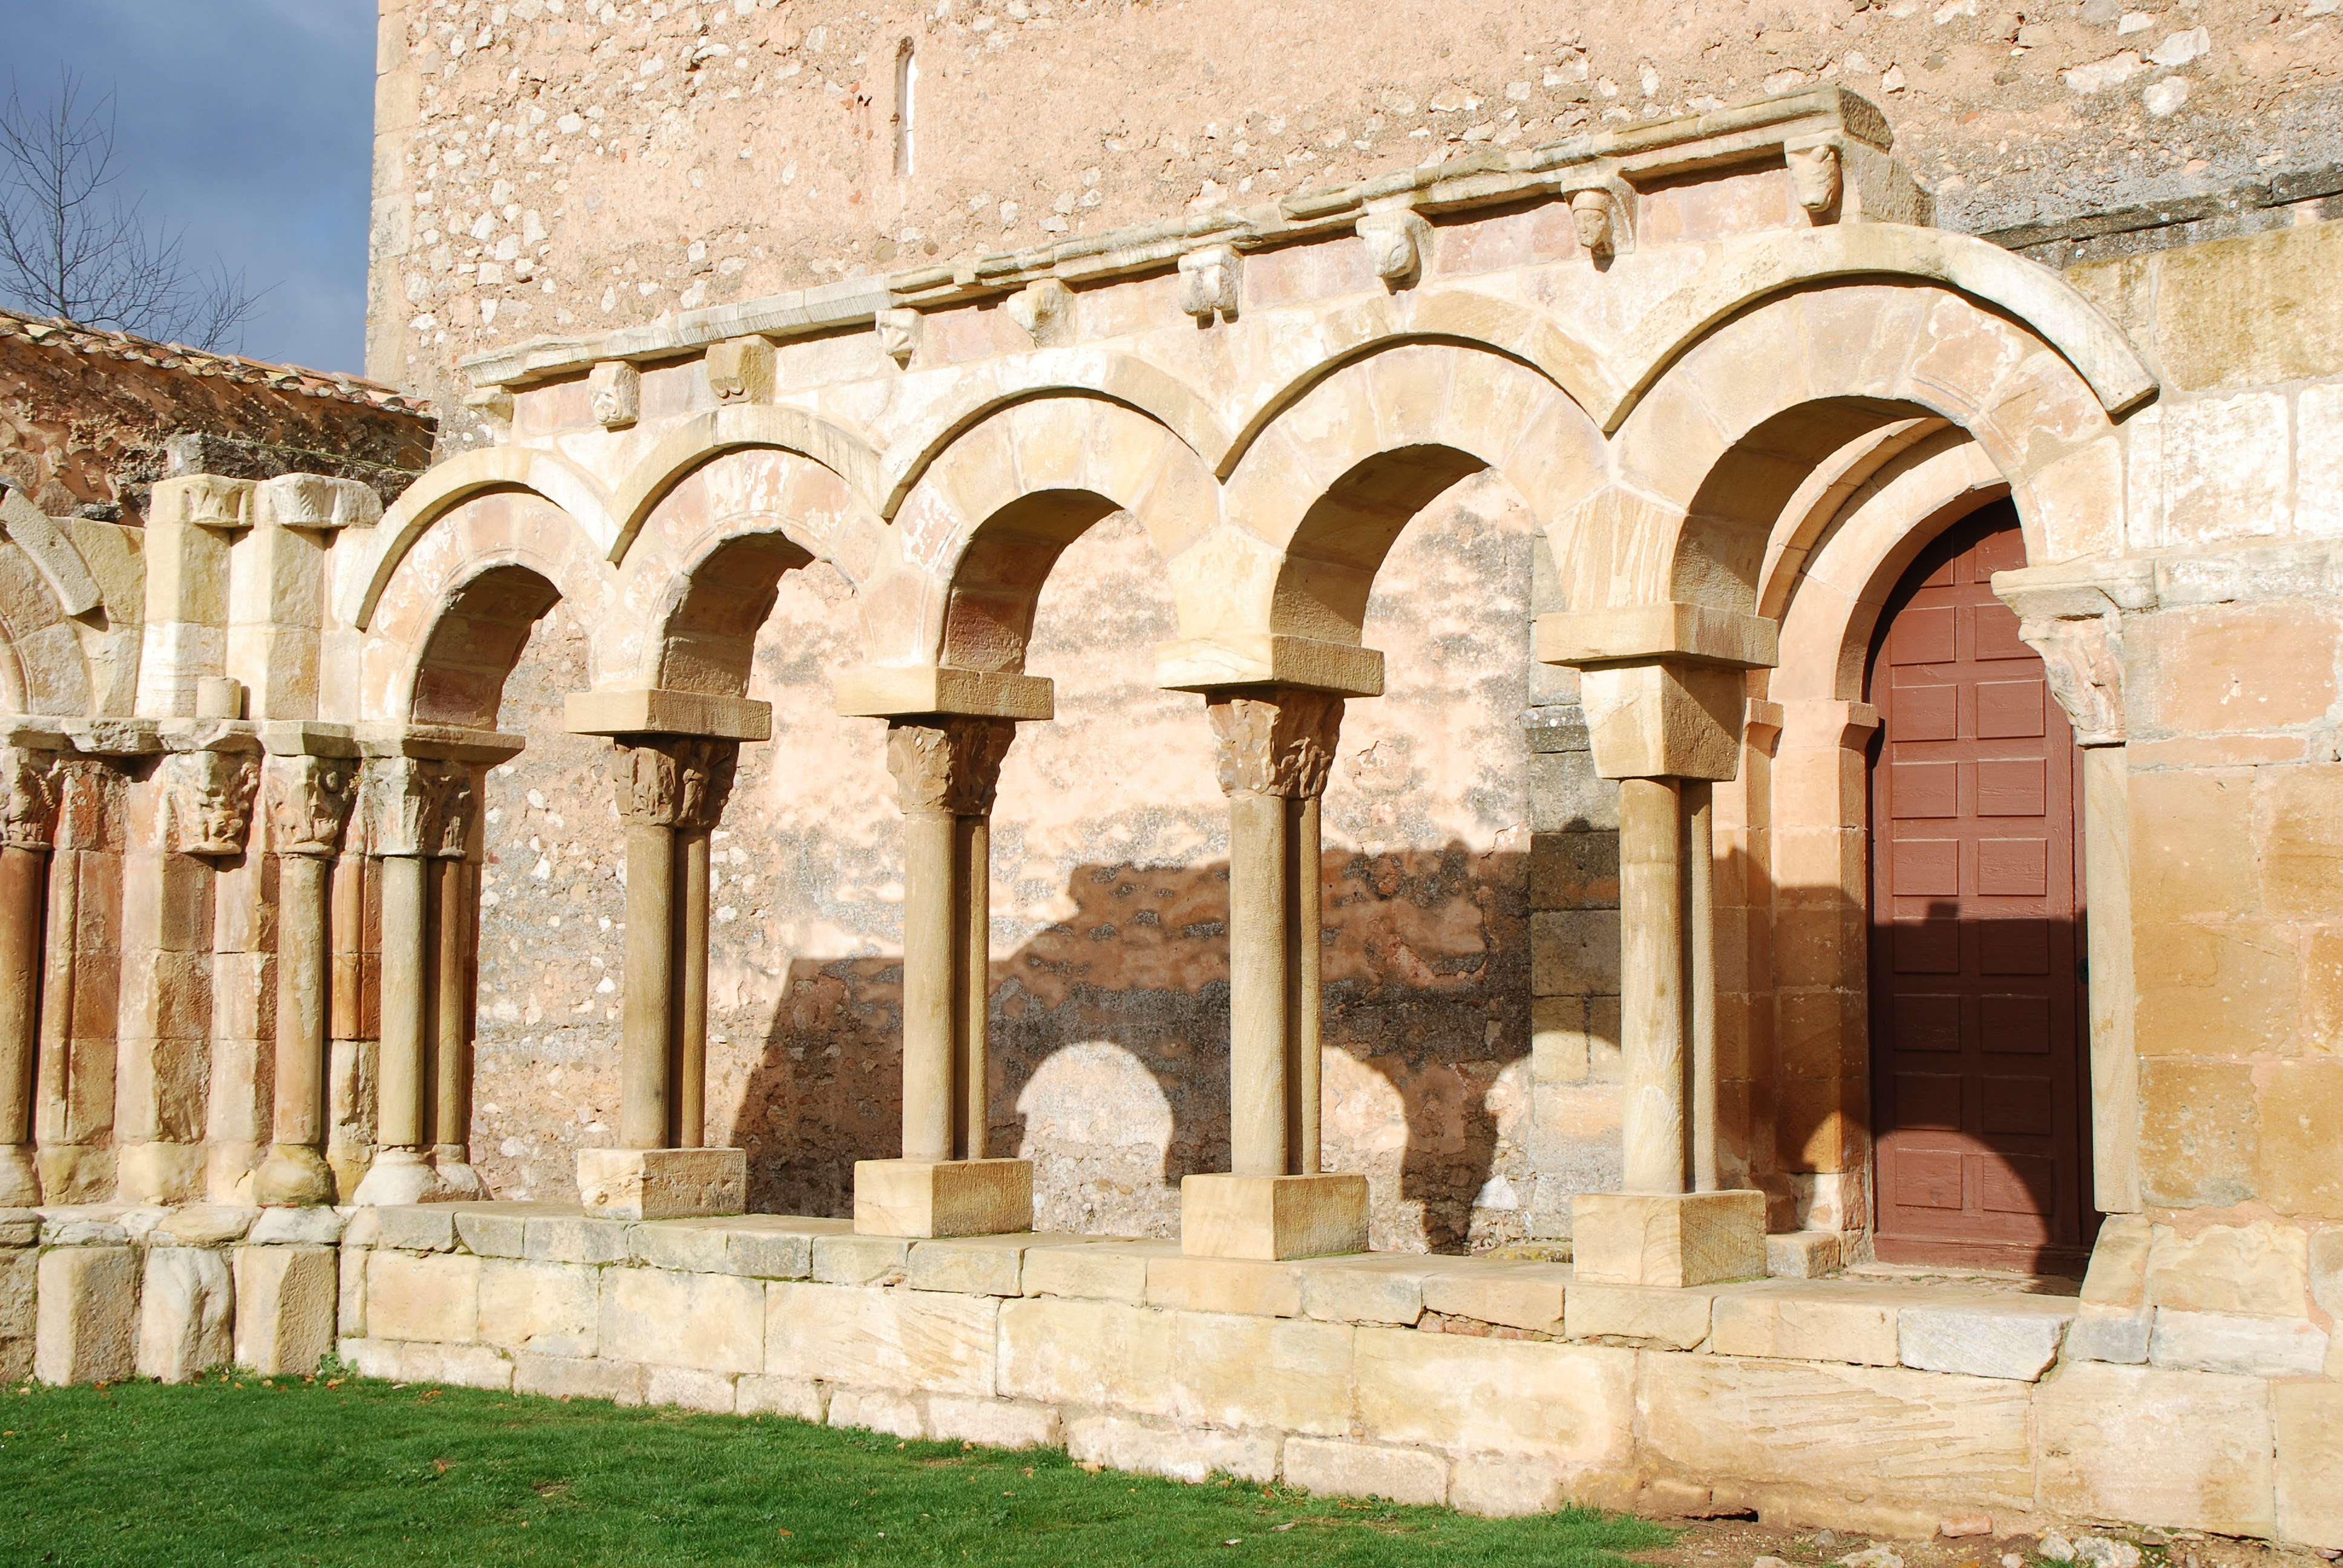 Monasterio de San Juan de Duero. Un enigma - Blogs of Spain - Monasterio de San Juan de Duero (5)